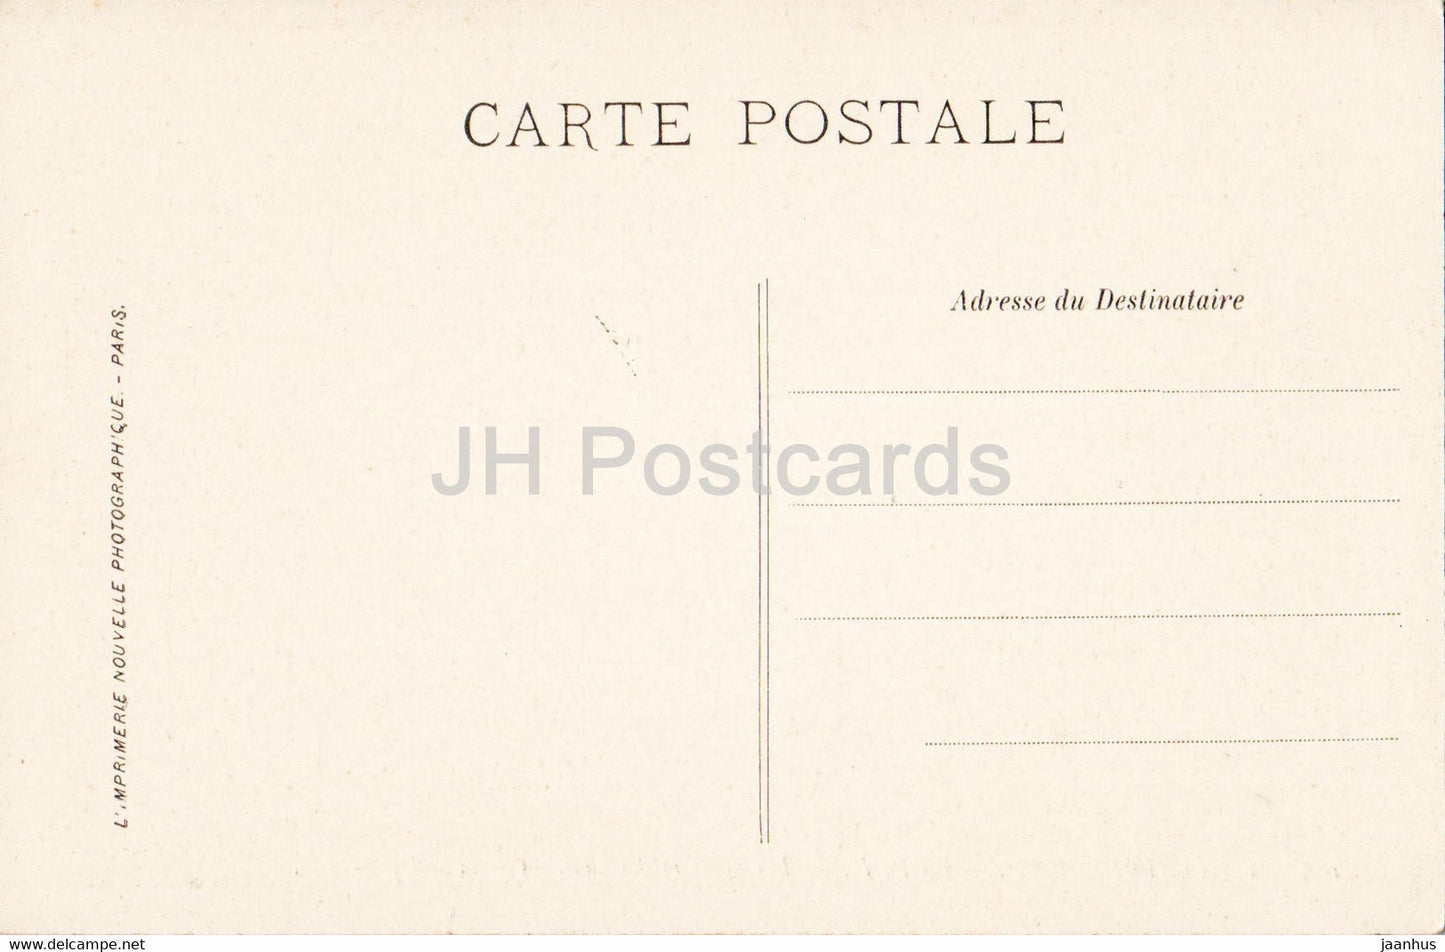 Fontainebleau - La Foret - Les Sentiers des hauteurs de la Solle - 185 - carte postale ancienne - France - oblitéré